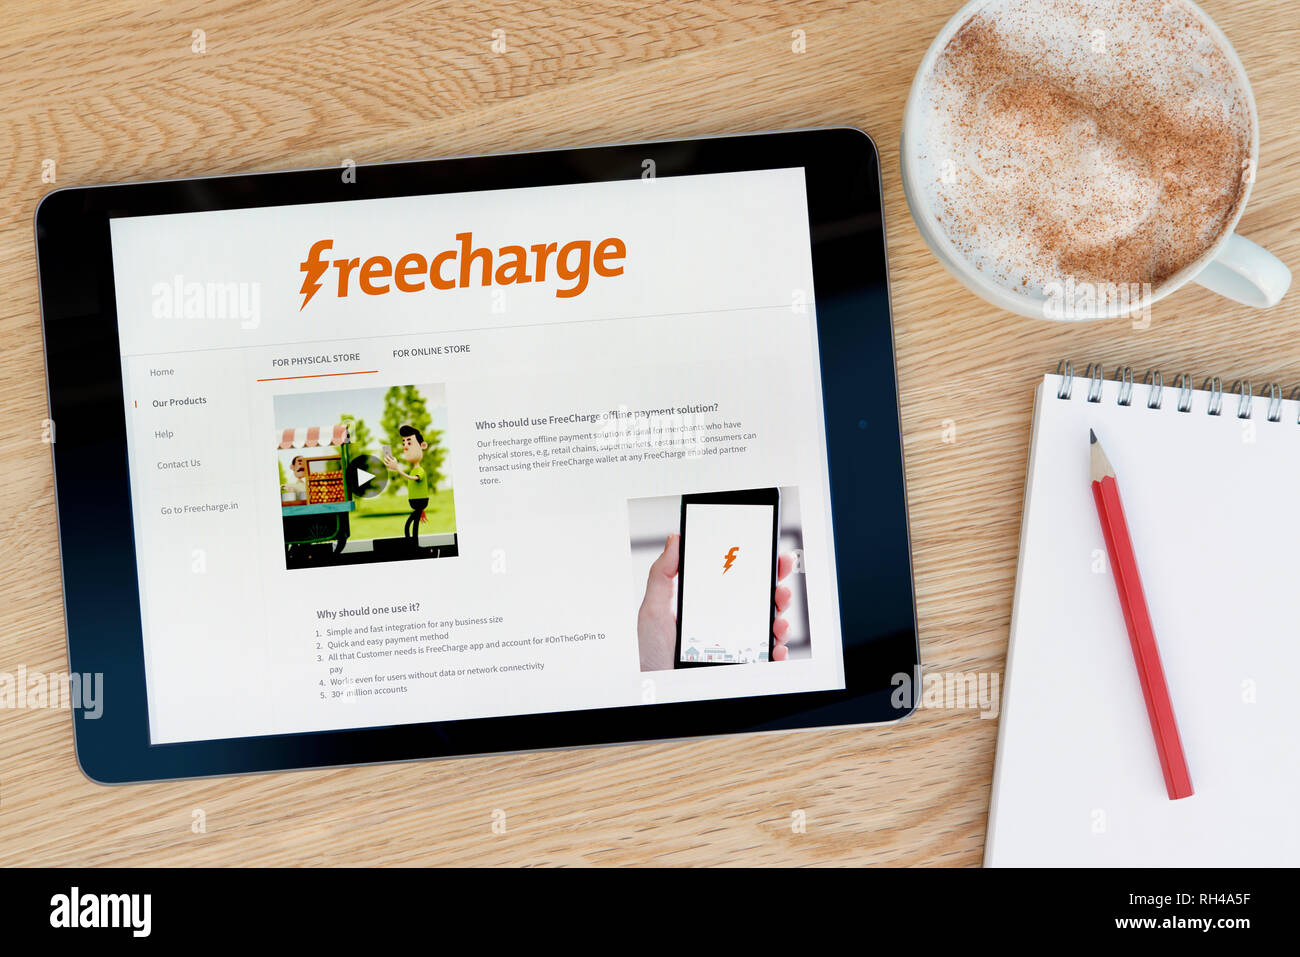 Die Freecharge website Funktionen auf einem iPad Tablet Gerät, das auf einem Tisch liegt neben einem Notizblock (nur redaktionelle Nutzung). Stockfoto